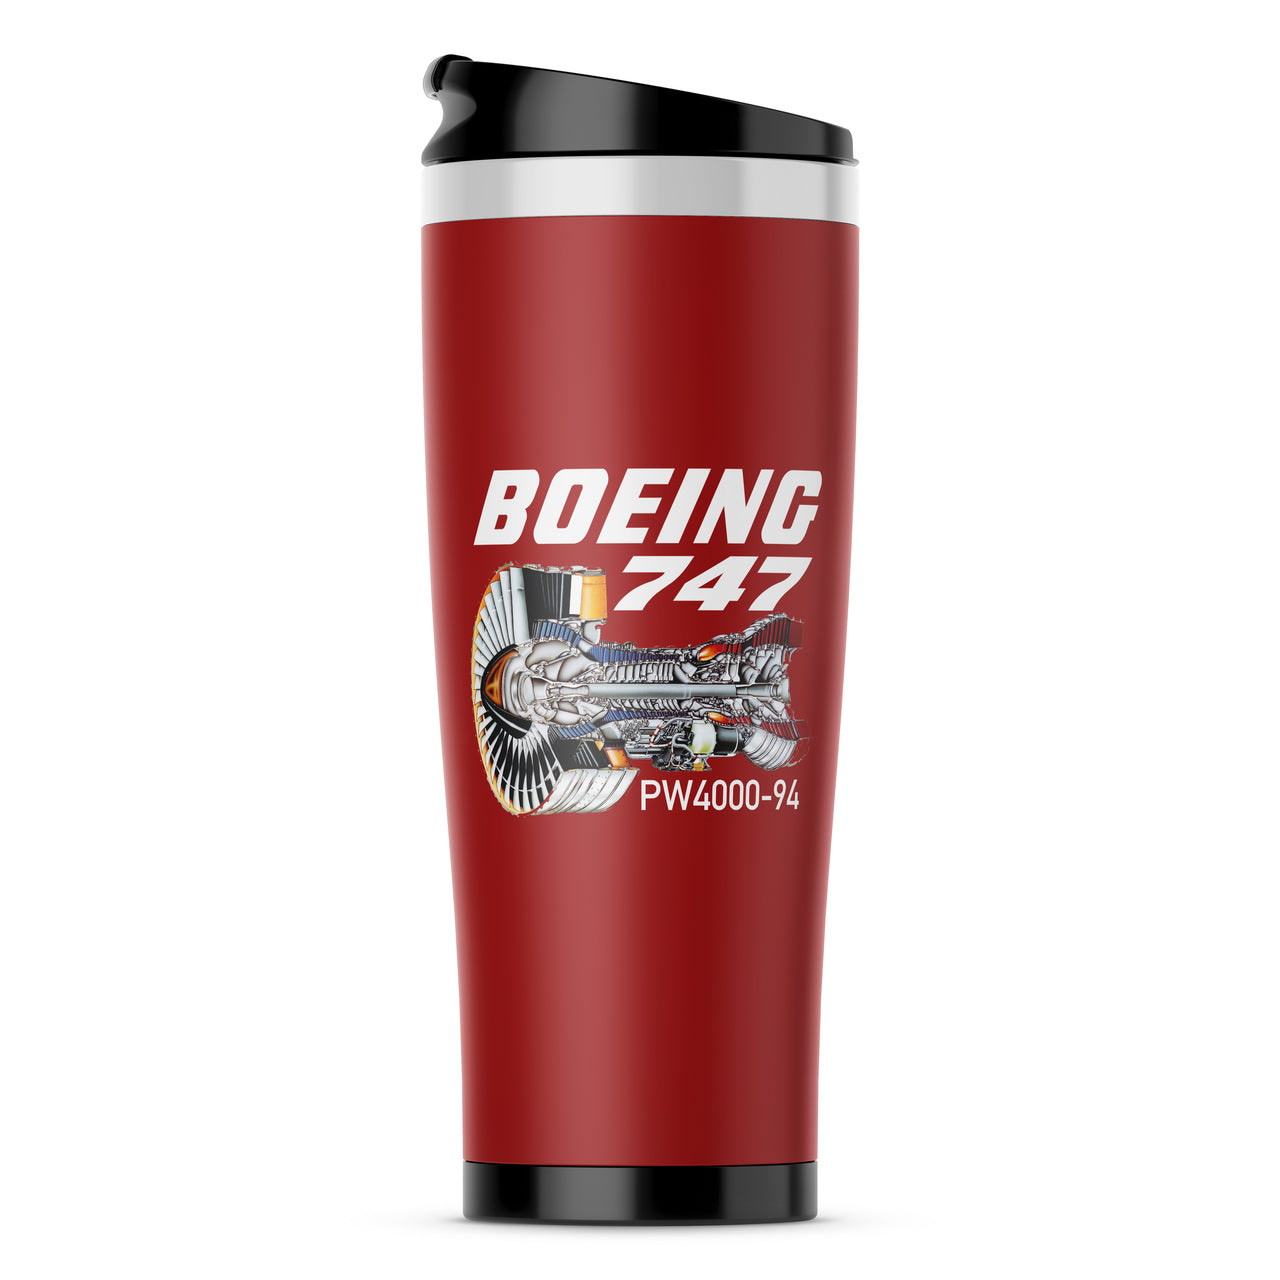 Boeing 747 & PW4000-94 Engine Designed Travel Mugs